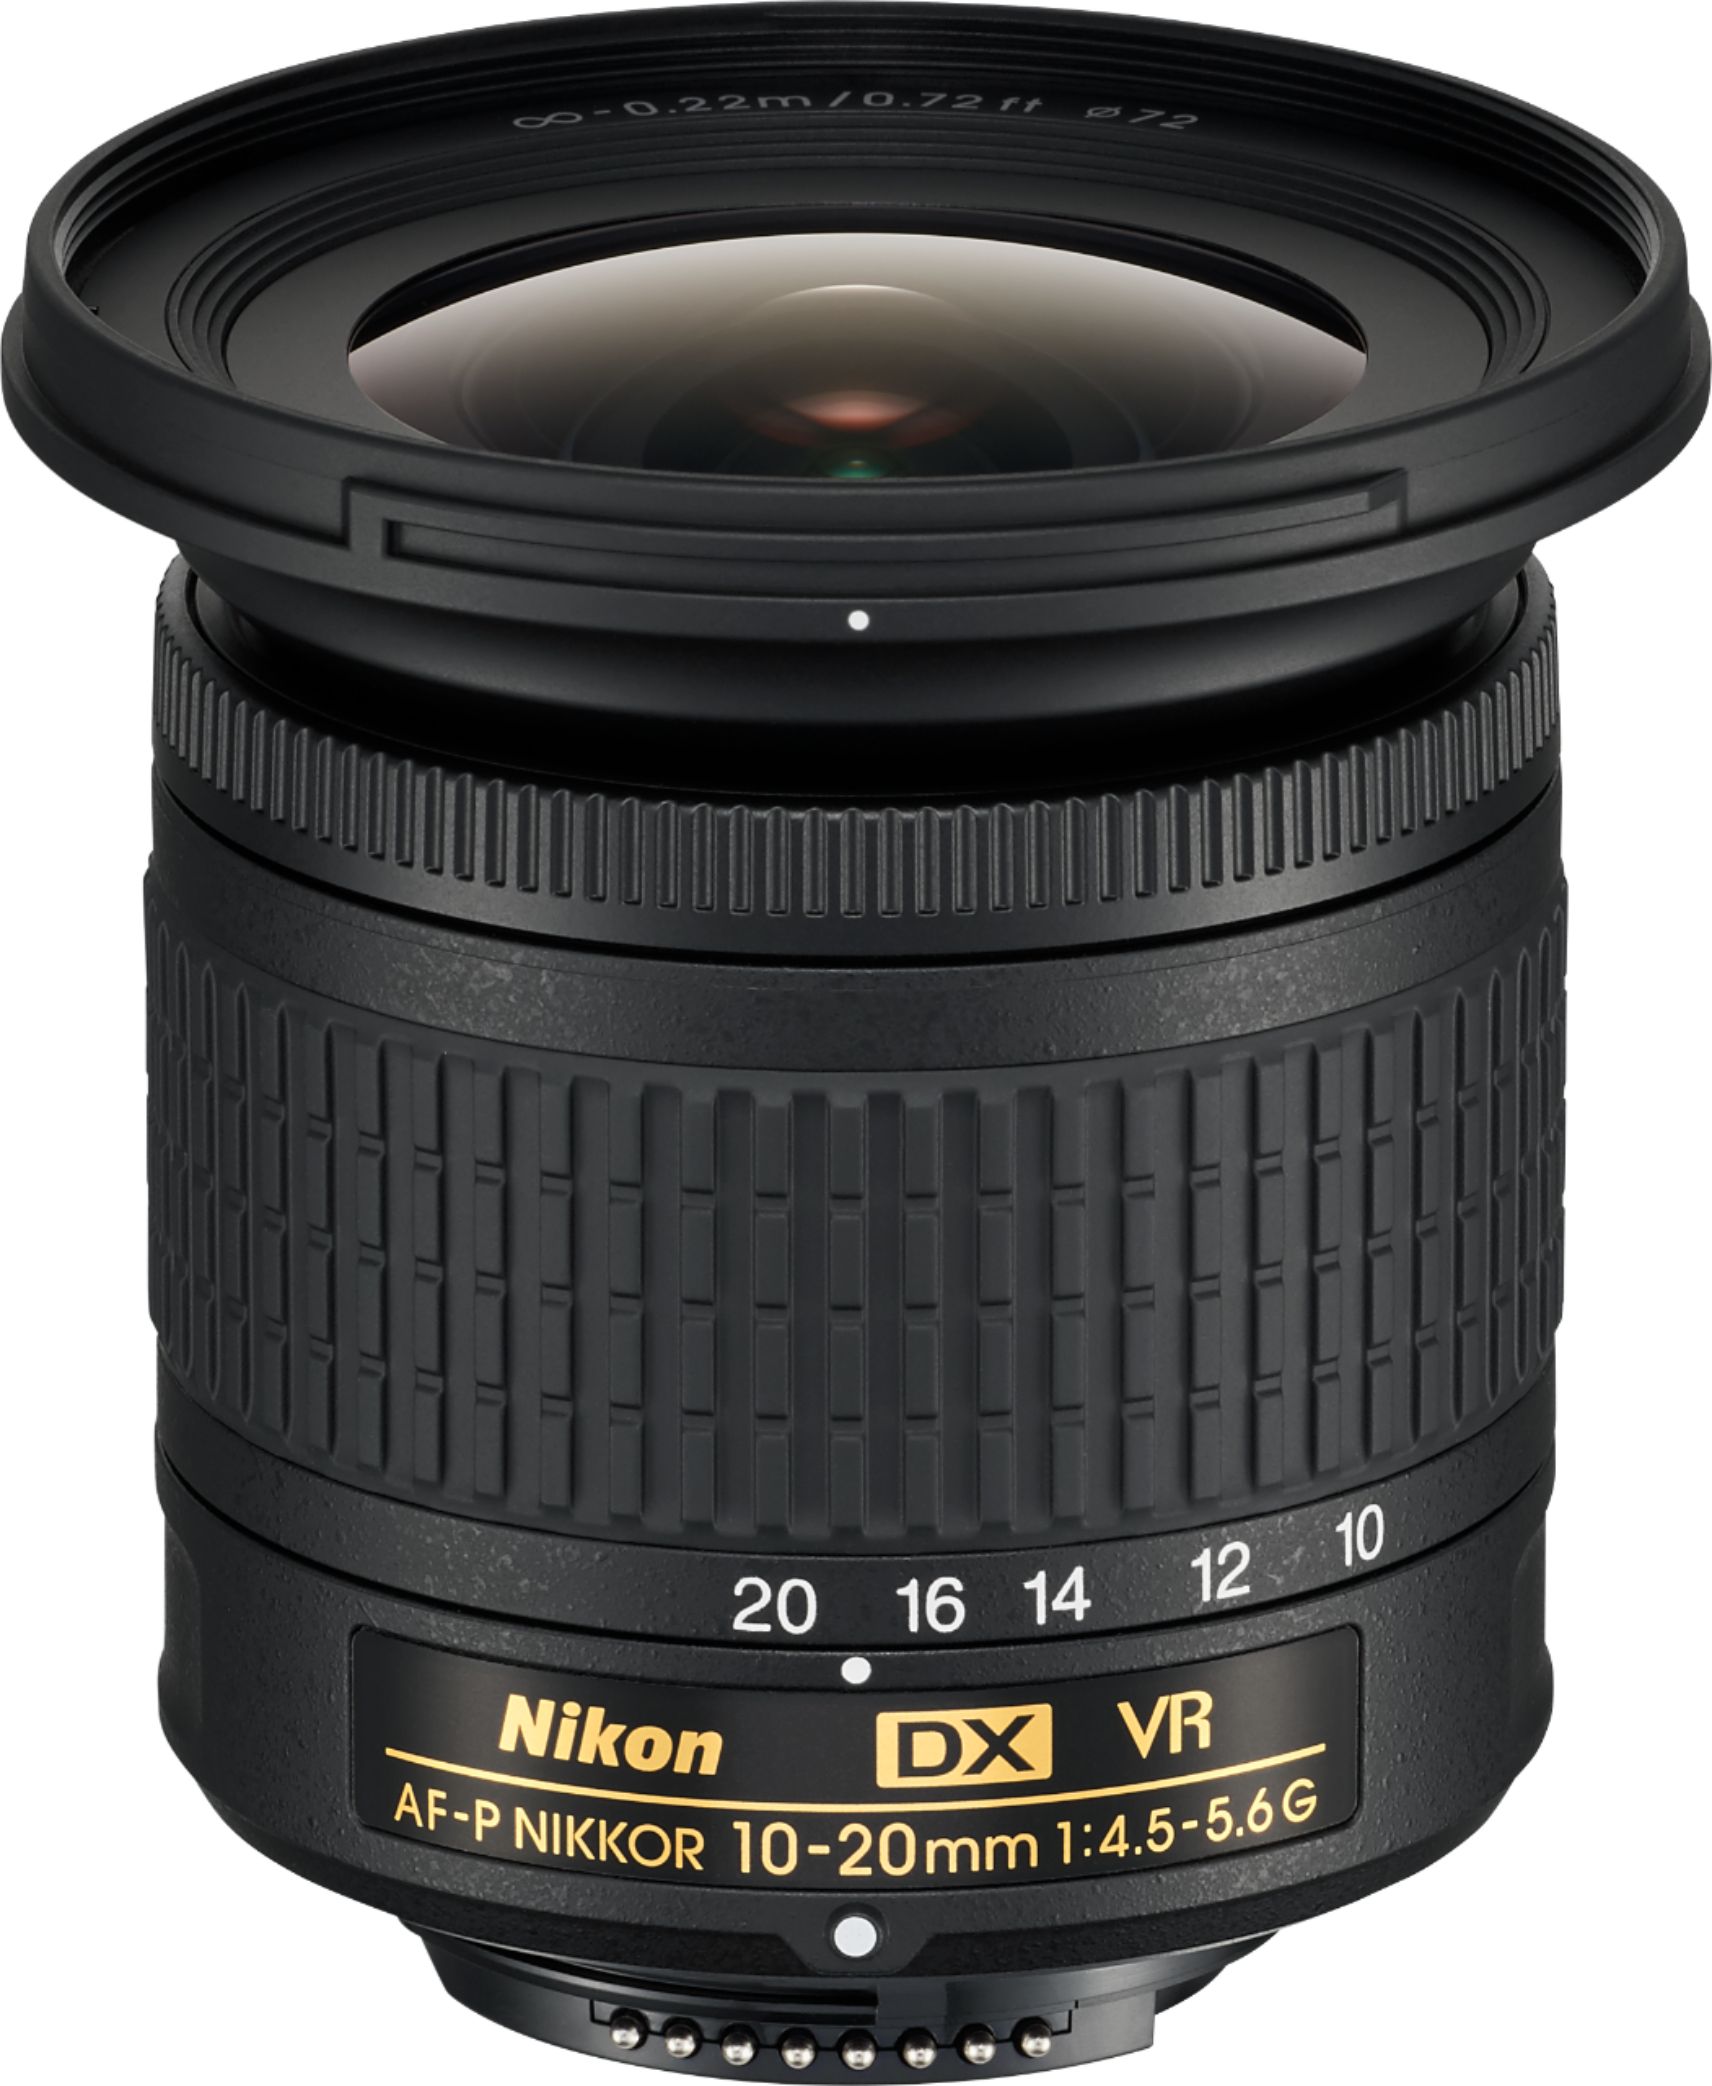 Nikon AF-P DX NIKKOR 10-20mm f/4.5-5.6G VR Wide-Angle Zoom